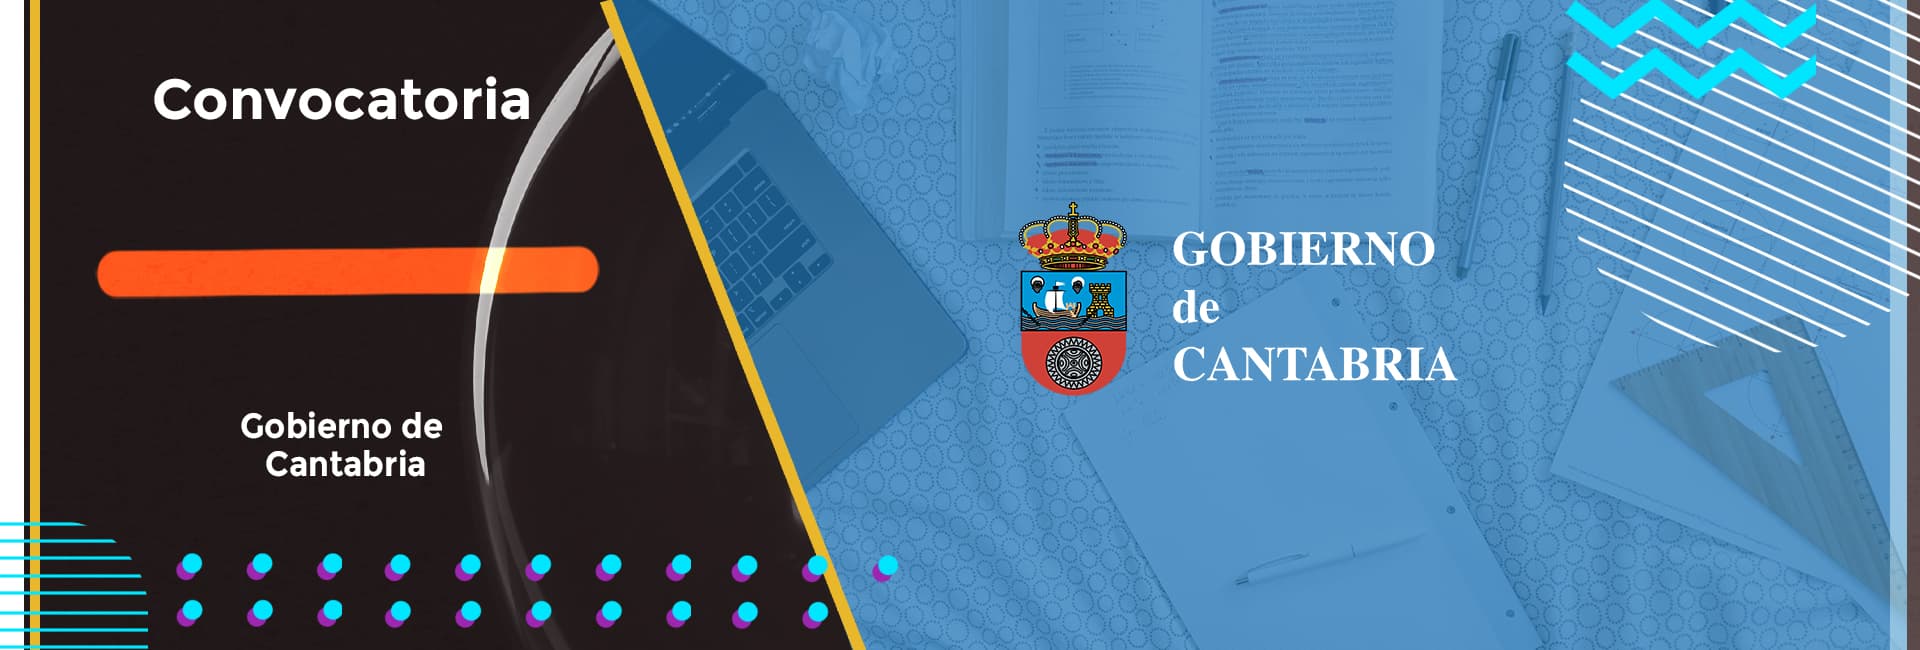 El Gobierno de Cantabria anuncia la convocatoria de subvenciones destinadas a la ejecución de programas formativos con compromiso de contratación